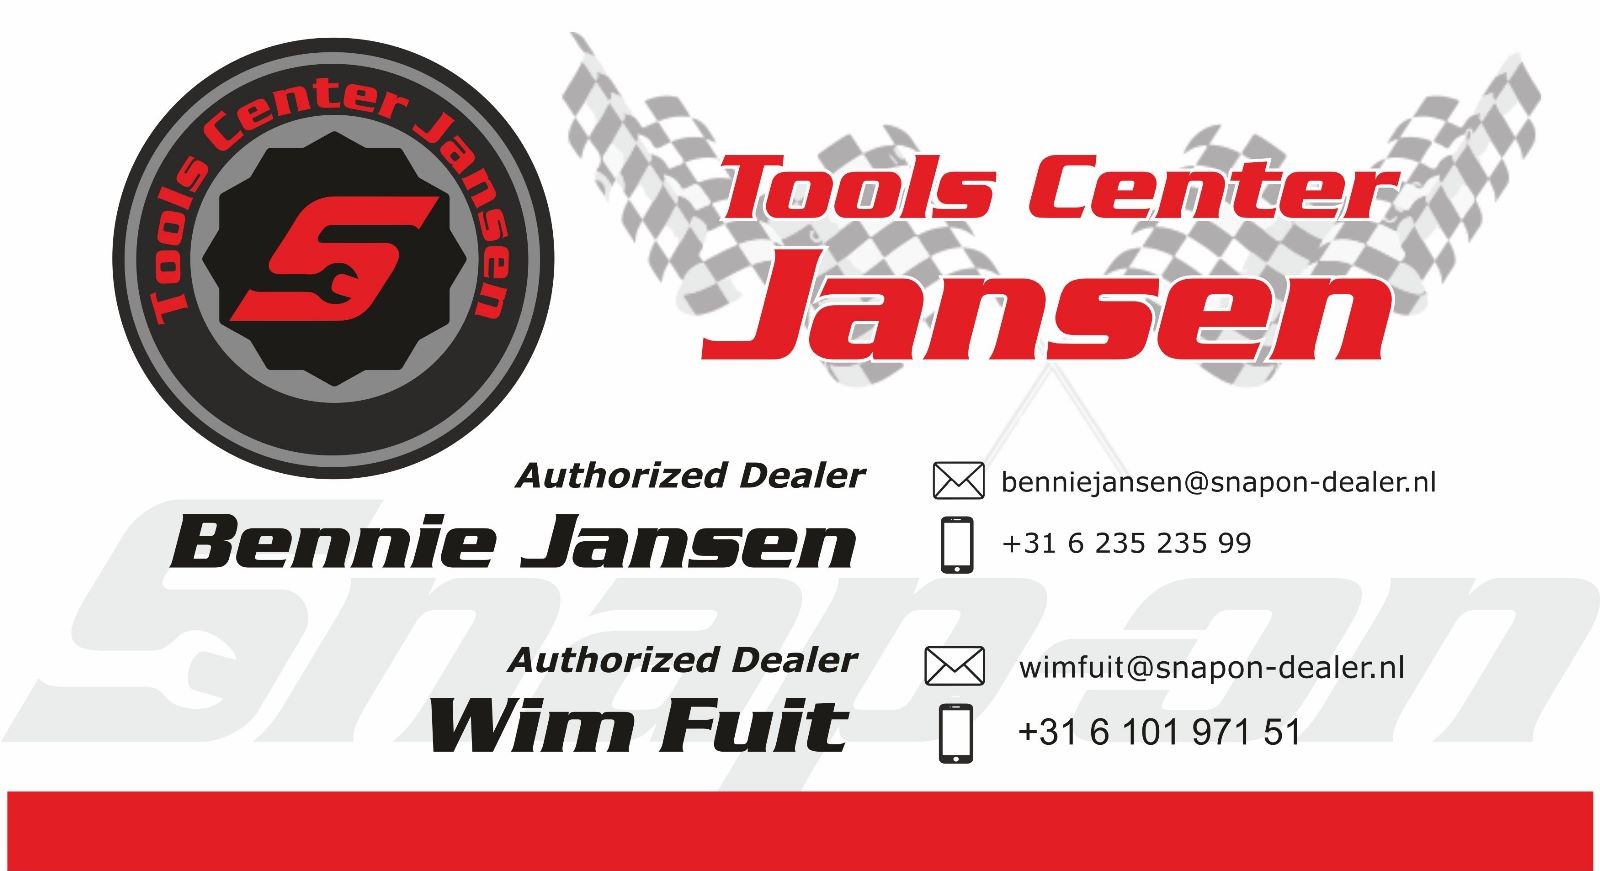 Snap on / Tools Center Bennie Jansen